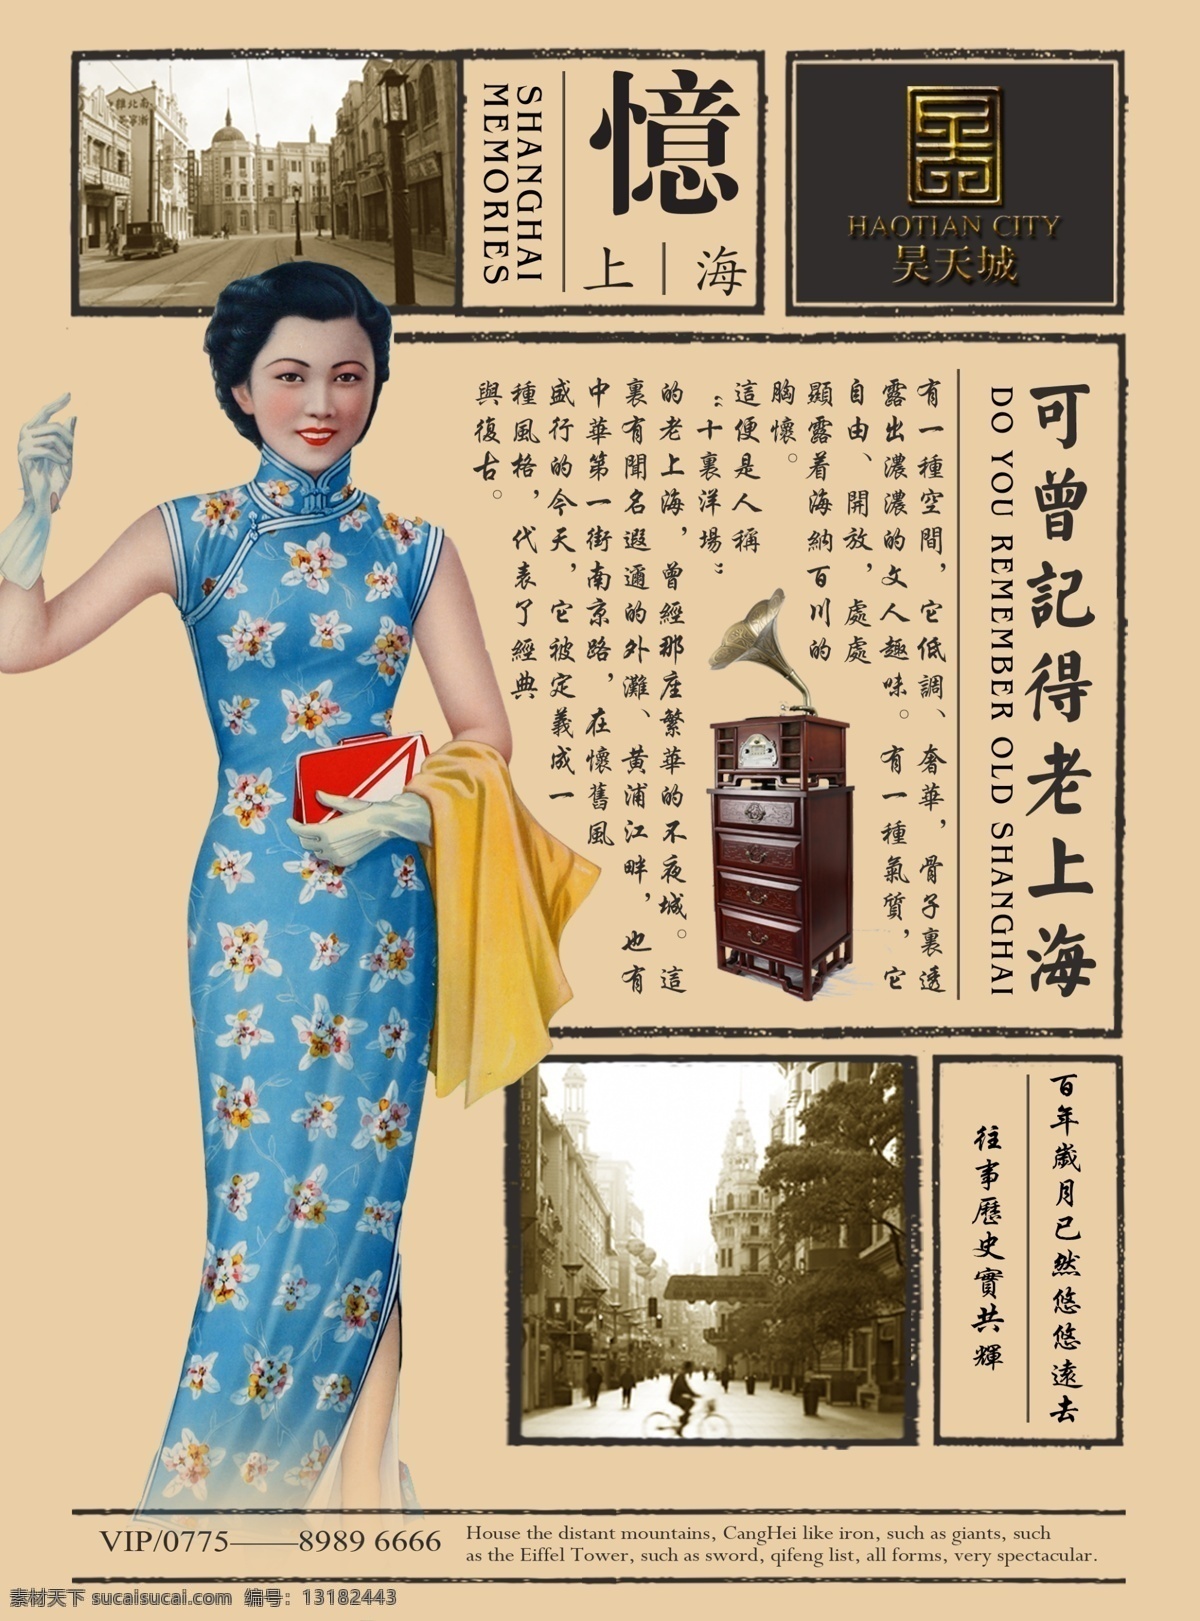 老上海海报 上海 城市 民国 复古风 旗袍 美女 老城 房地产广告 记忆 老照片 留声机 旧报纸 民国报纸 房地产